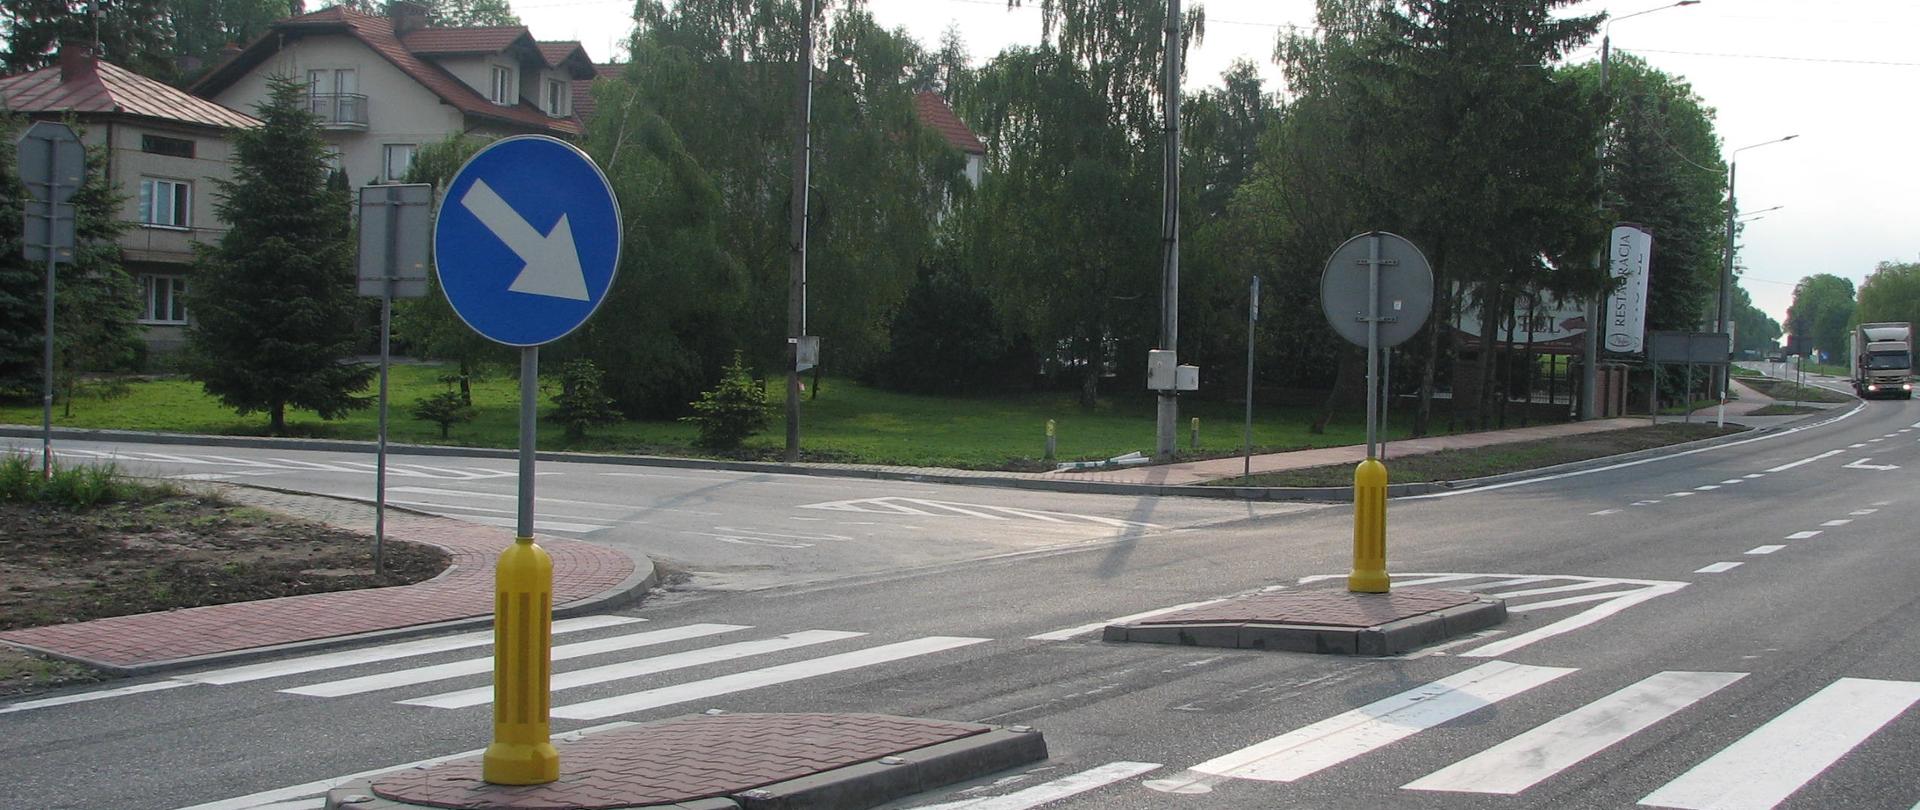 DK73 Stopnica - skrzyżowanie z namalowanym przejściem dla pieszych, oznakowany azyl dla pieszych z wysepkami, przy skrzyżowaniu drzewa, dom. W oddali na drodze samochód ciężarowy 